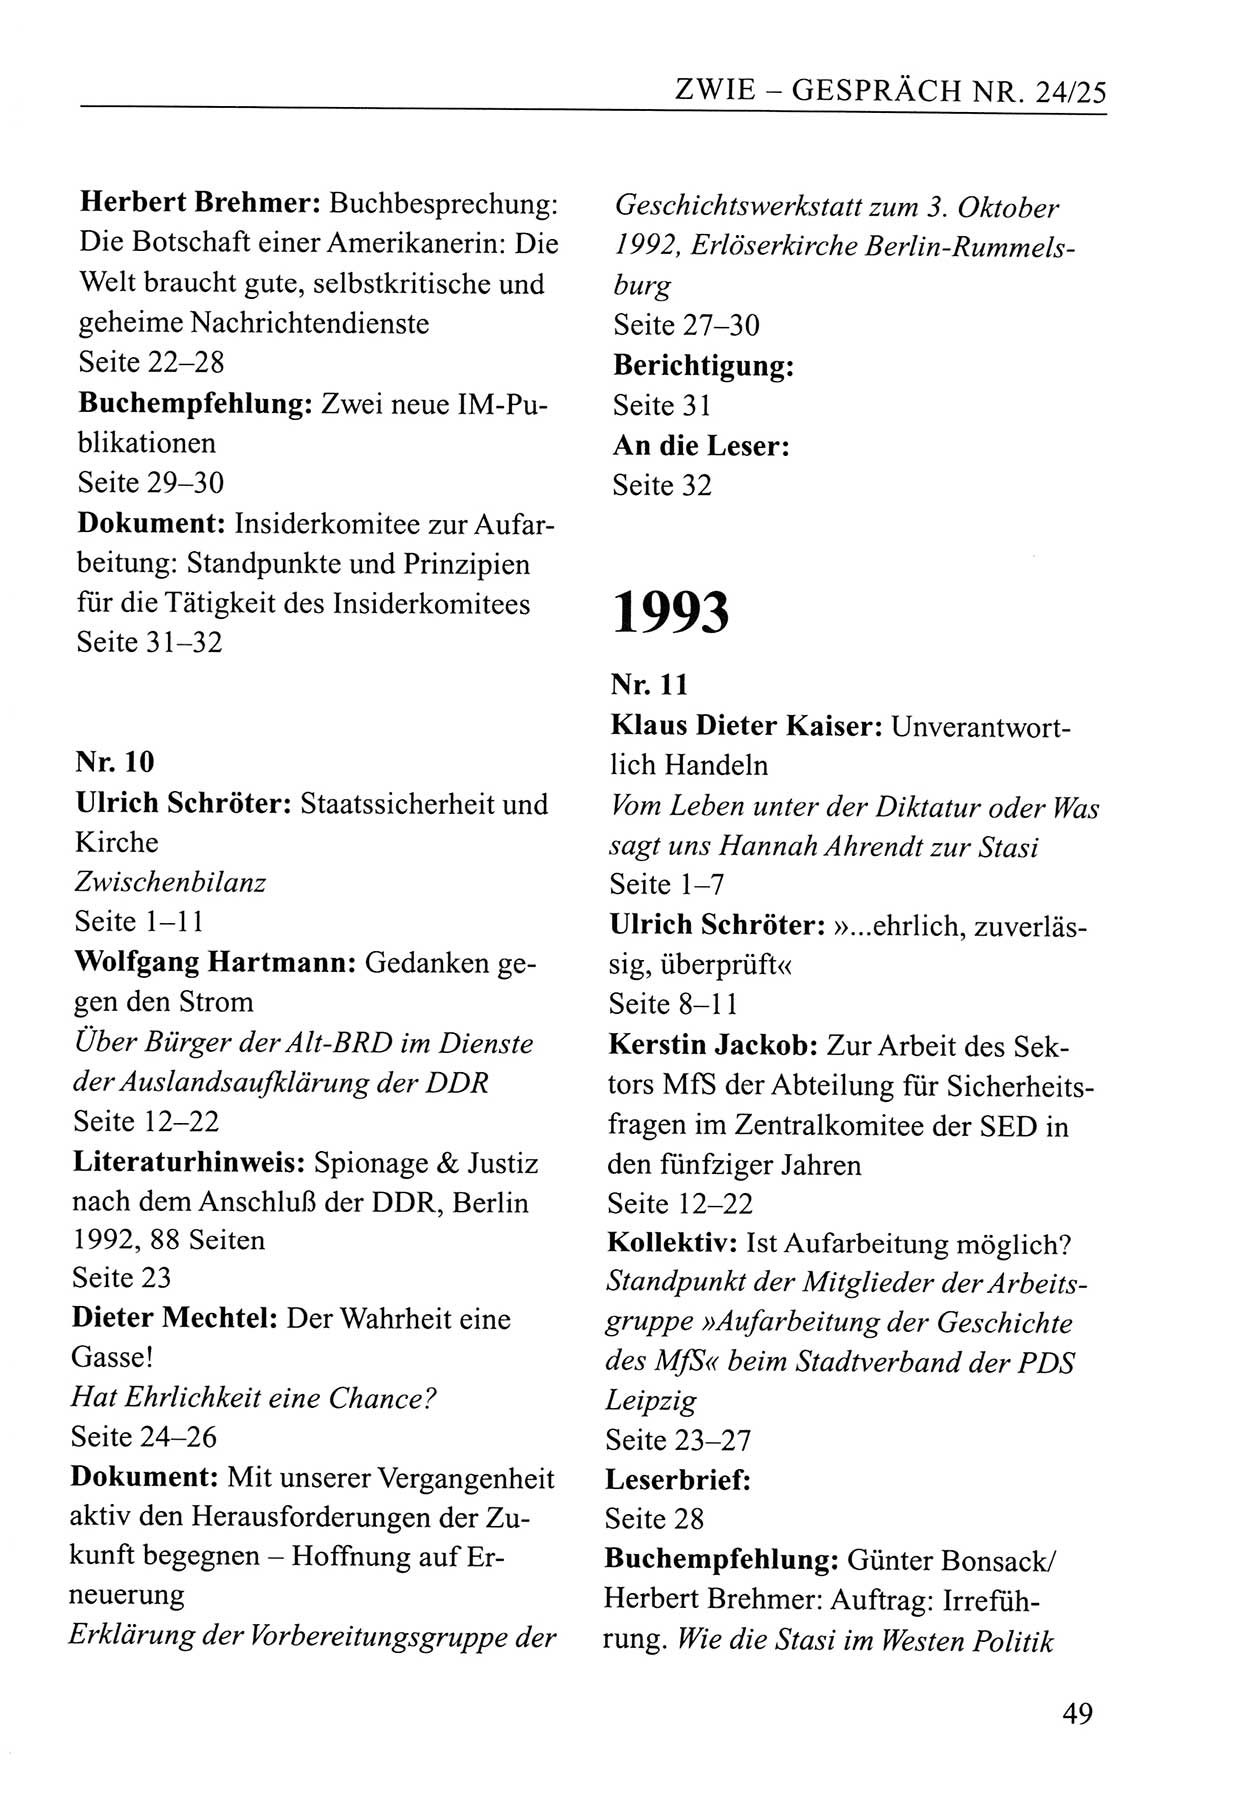 Zwie-Gespräch, Beiträge zum Umgang mit der Staatssicherheits-Vergangenheit [Deutsche Demokratische Republik (DDR)], Ausgabe Nr. 24/25, Berlin 1994, Seite 49 (Zwie-Gespr. Ausg. 24/25 1994, S. 49)